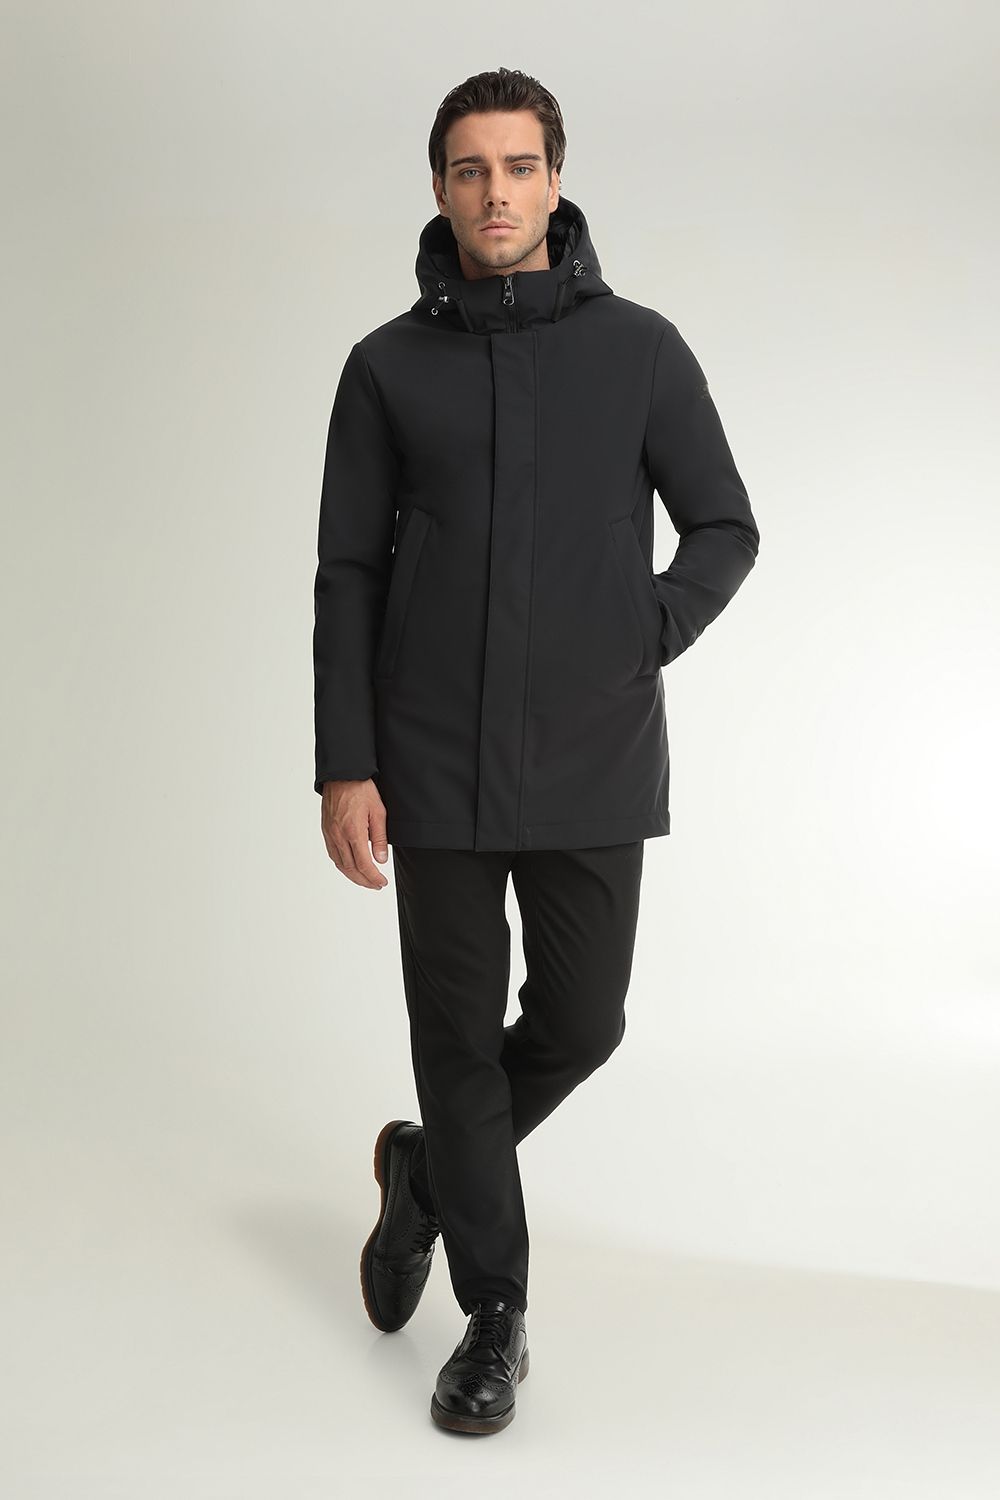 Men's coats Hetregó  Winter Collection 2020-21